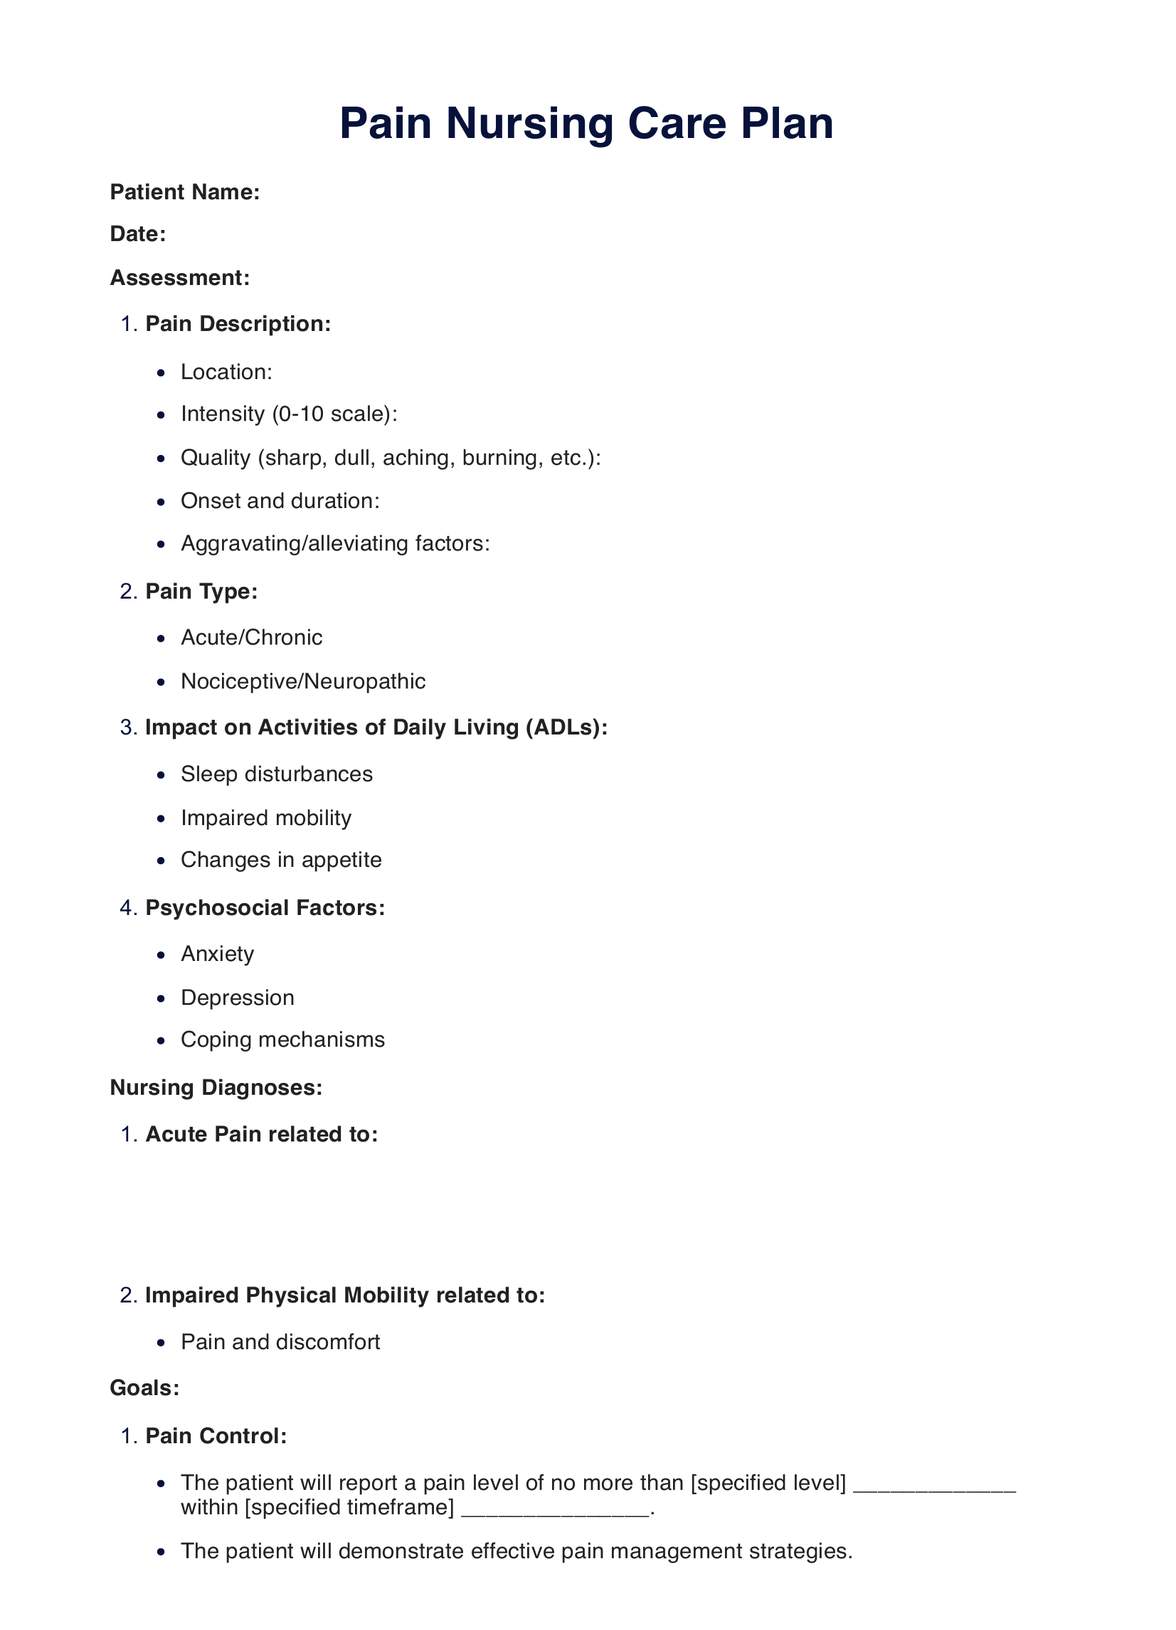 Pain Nursing Care Plan PDF Example